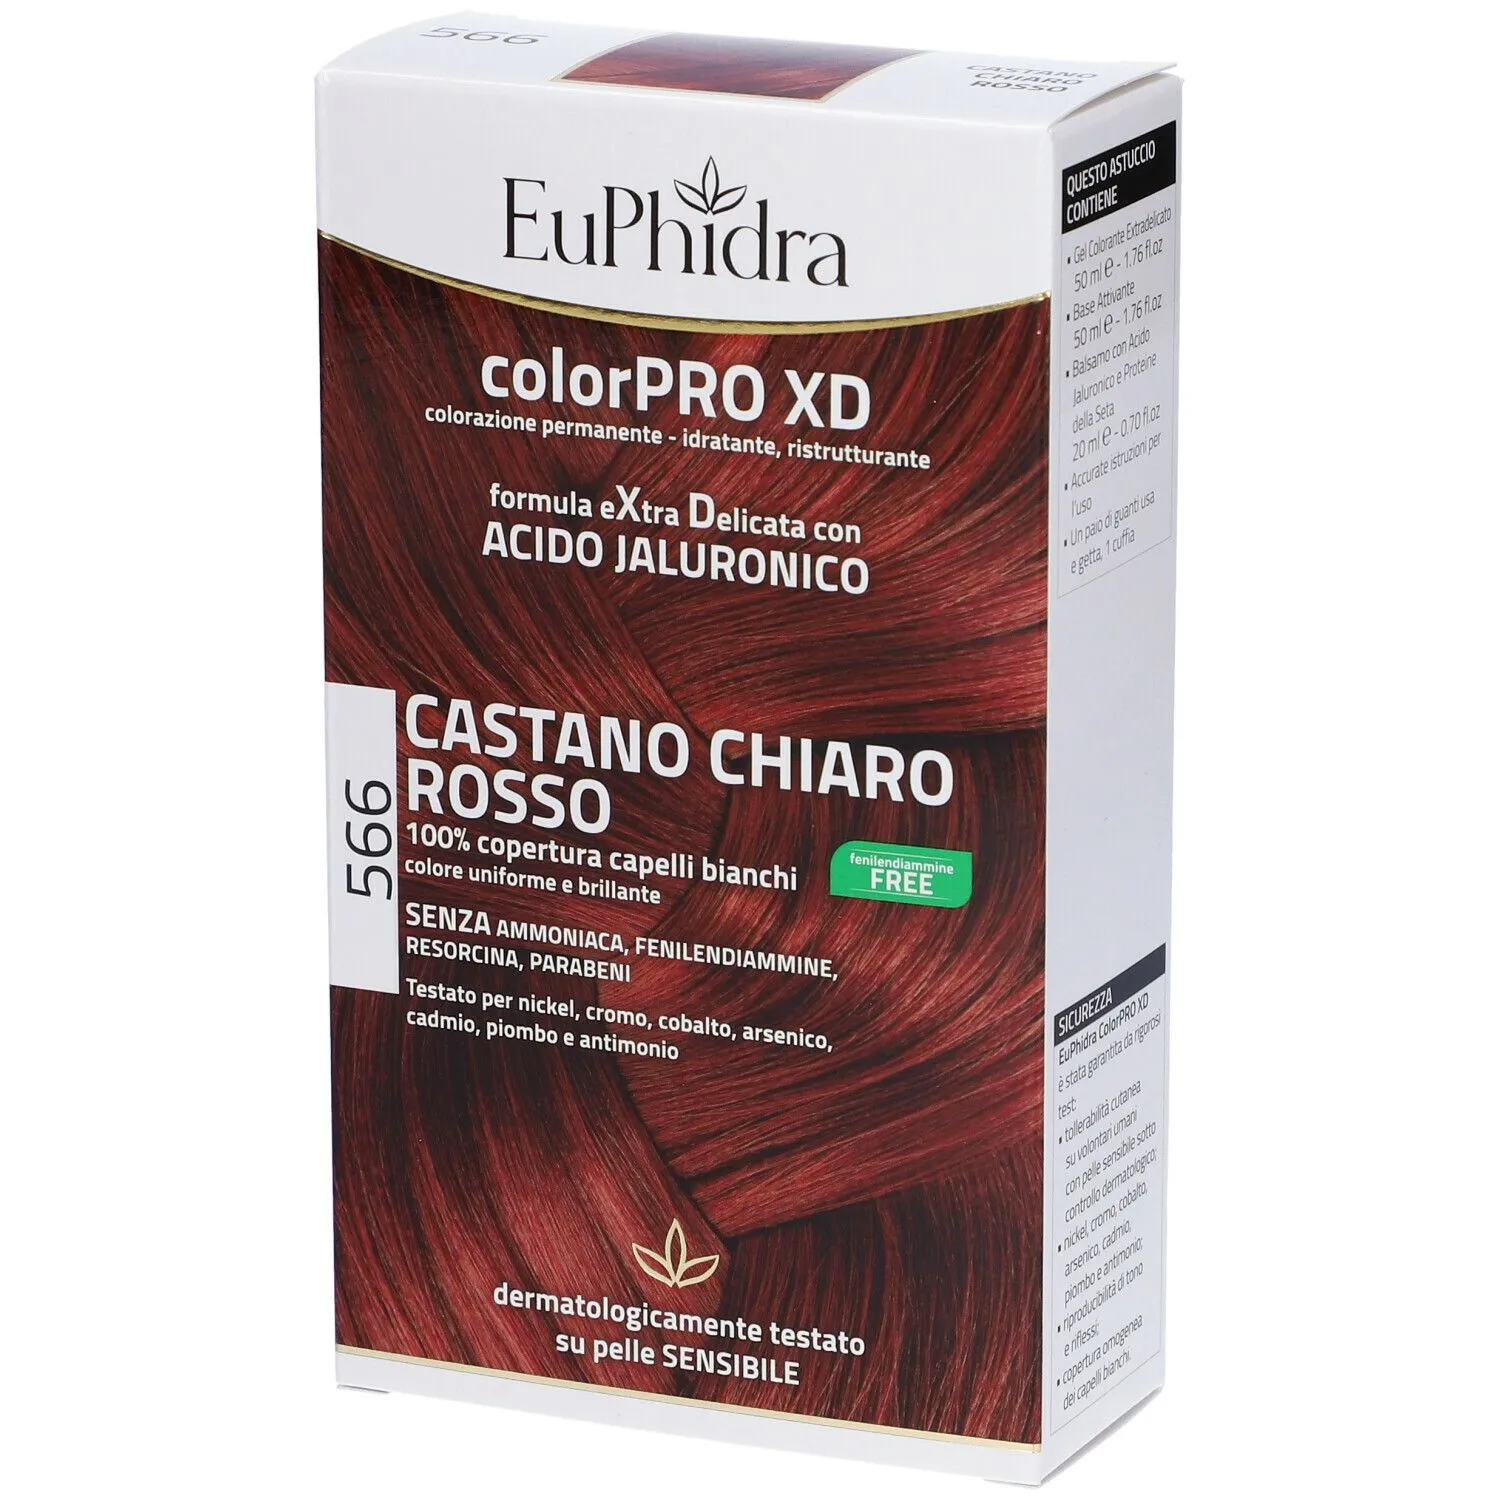 Euphidra ColorPRO XD Castano Chiaro Rosso 566